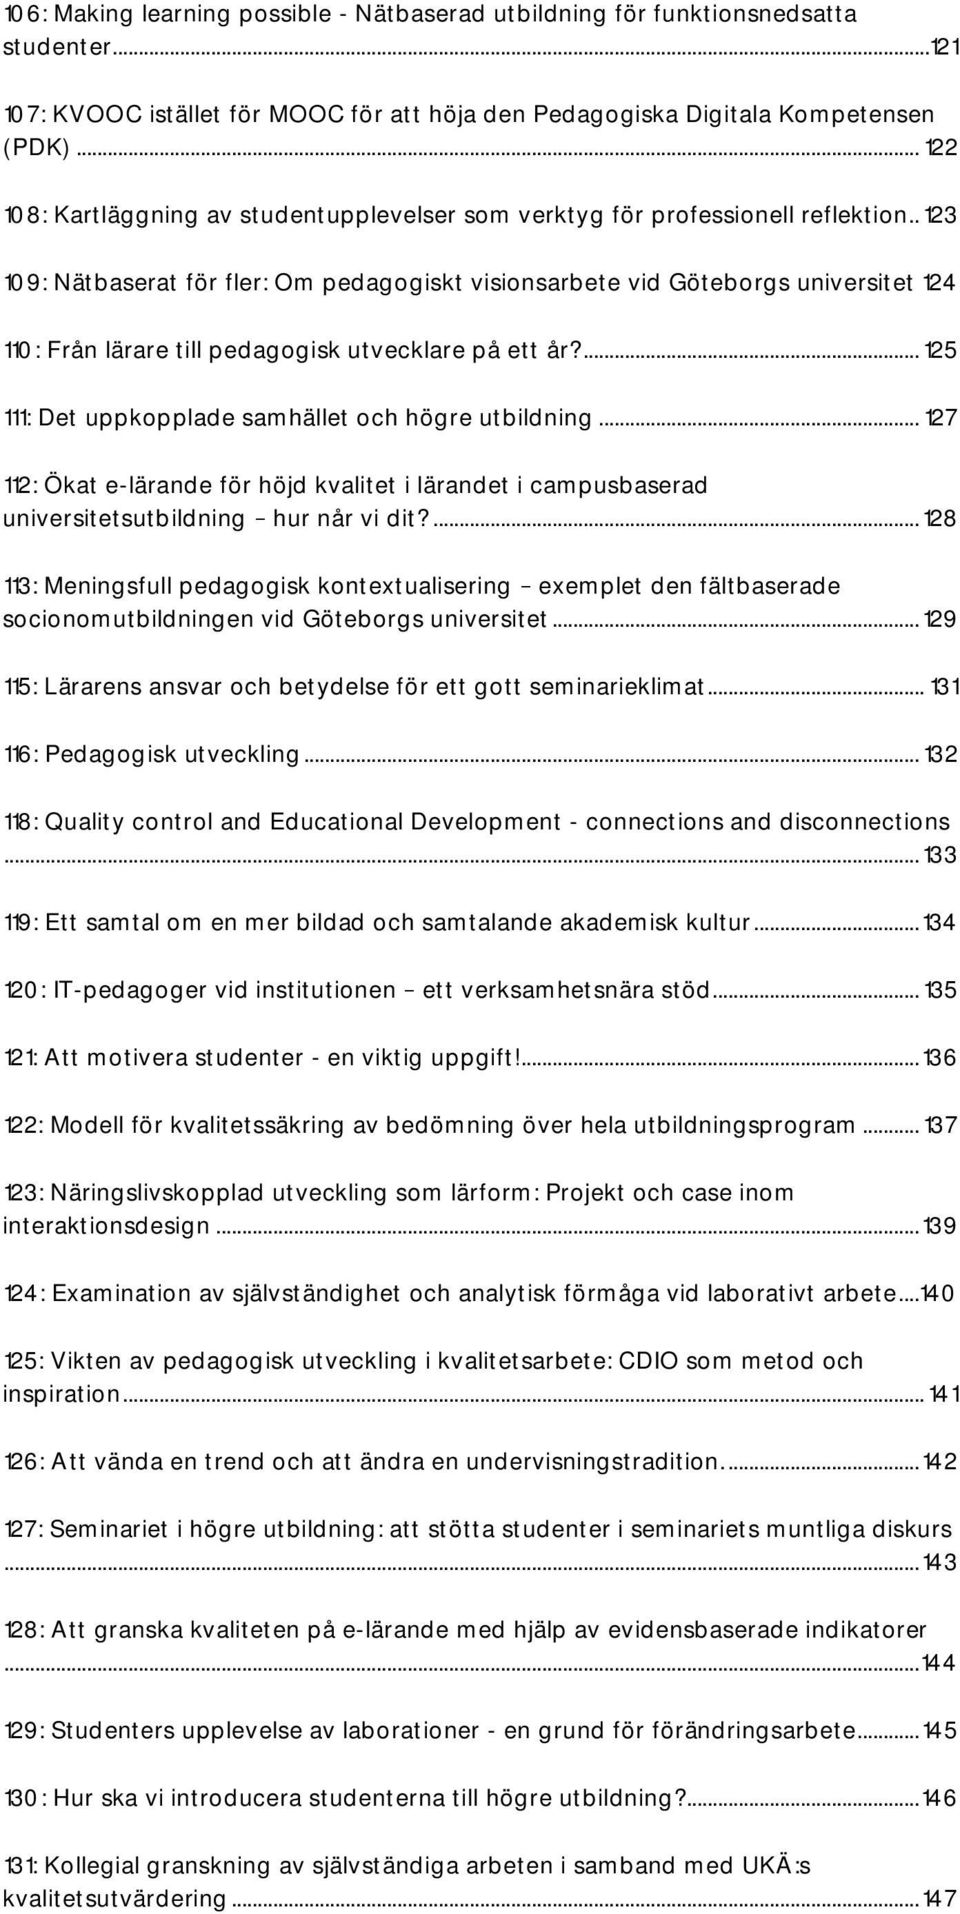 . 123 109: Nätbaserat för fler: Om pedagogiskt visionsarbete vid Göteborgs universitet 124 110: Från lärare till pedagogisk utvecklare på ett år?